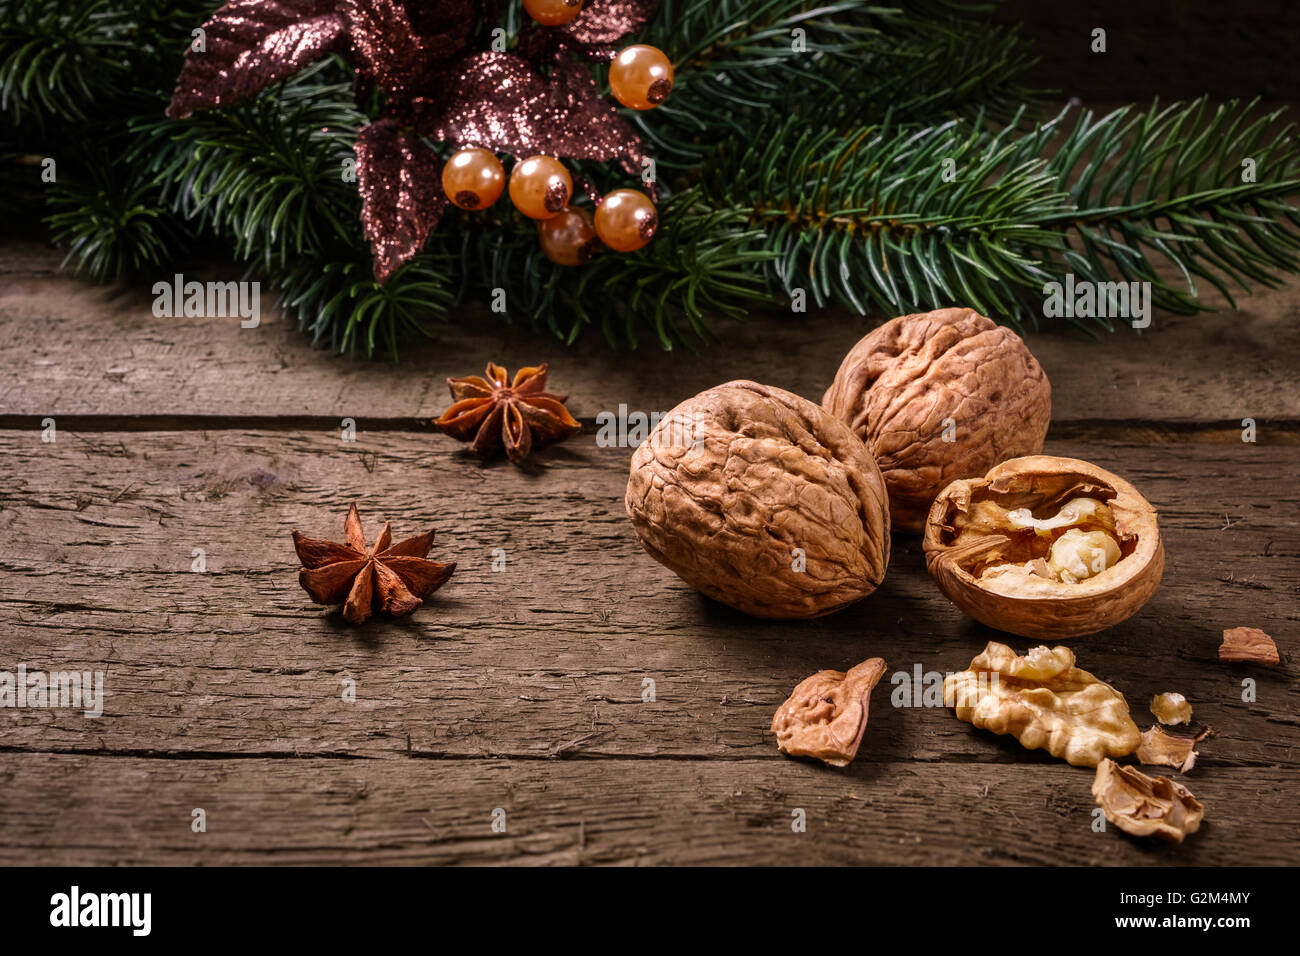 L'anis, de branches de sapin, Canneberges et noix sur des planches. Vous pouvez l'utiliser pour Noël arrière-plan, carte ou chèque. Banque D'Images